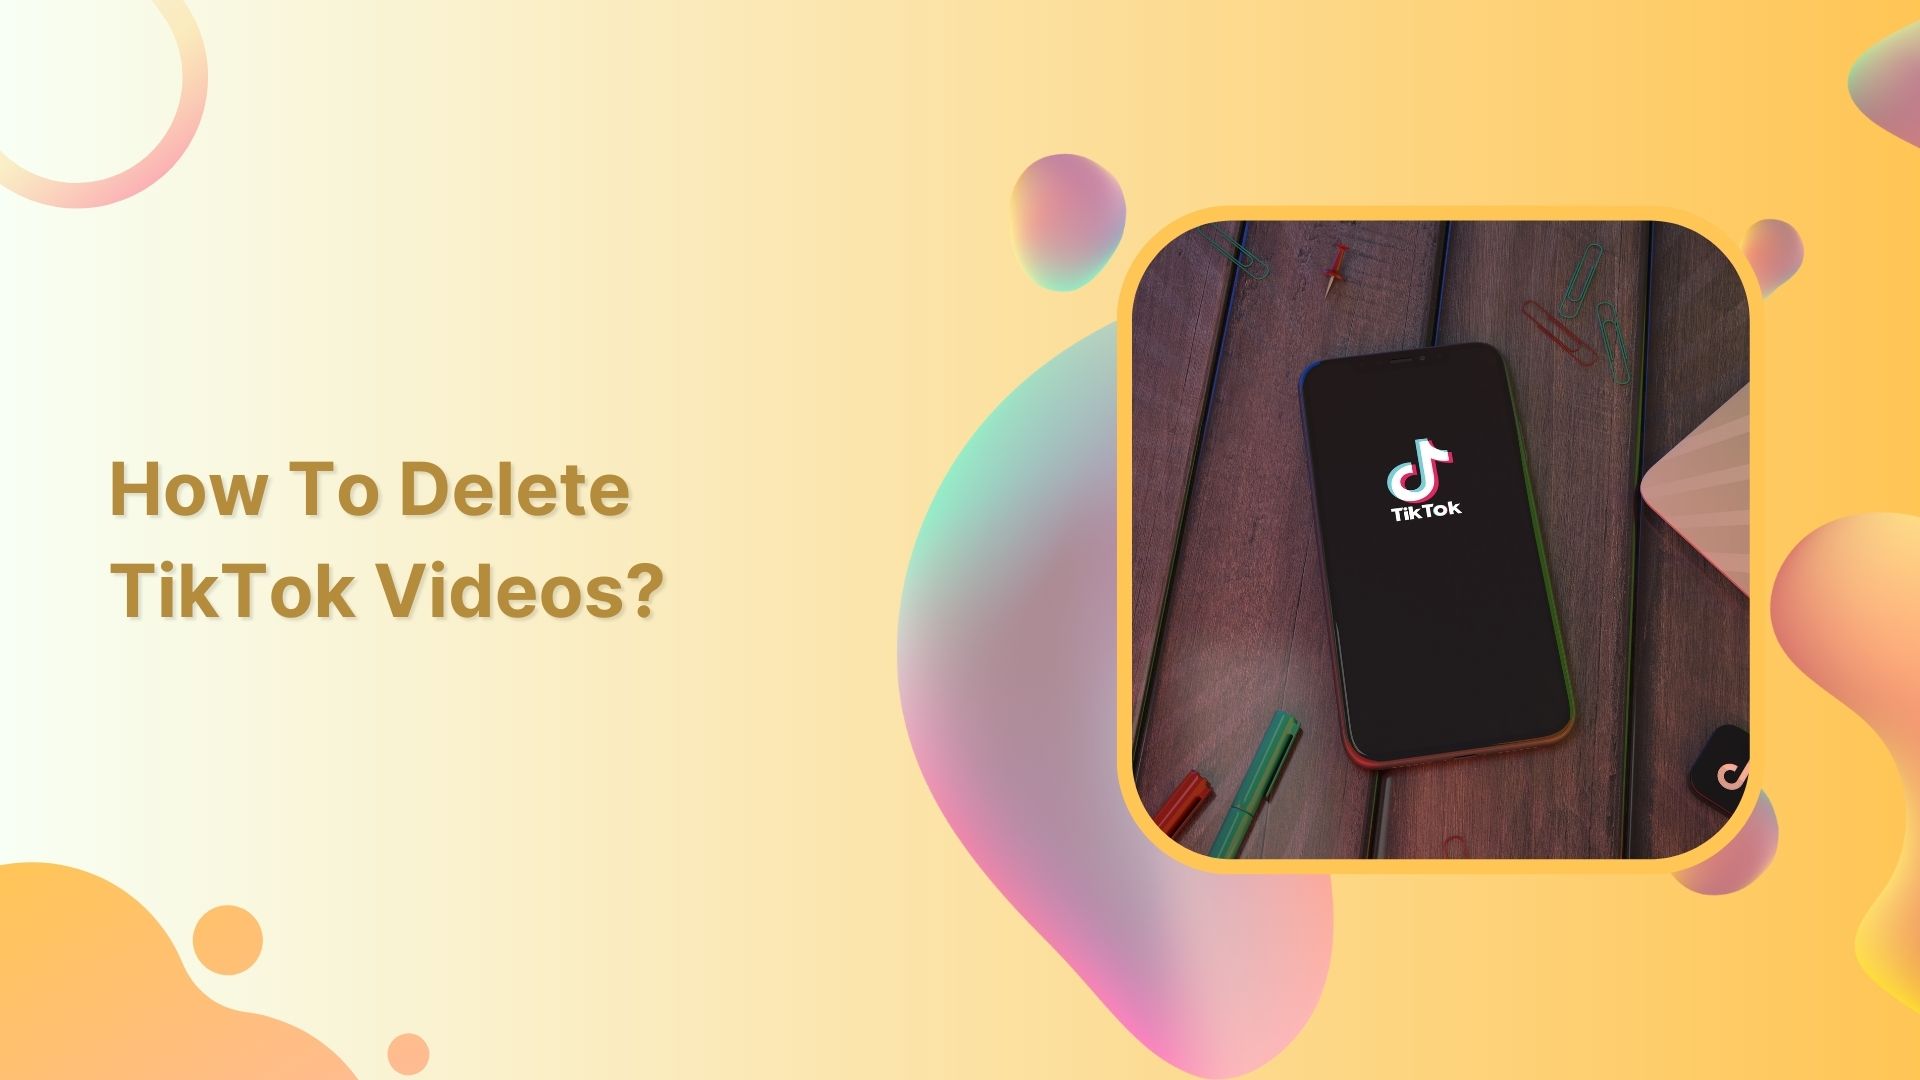 How to delete TikTok videos?